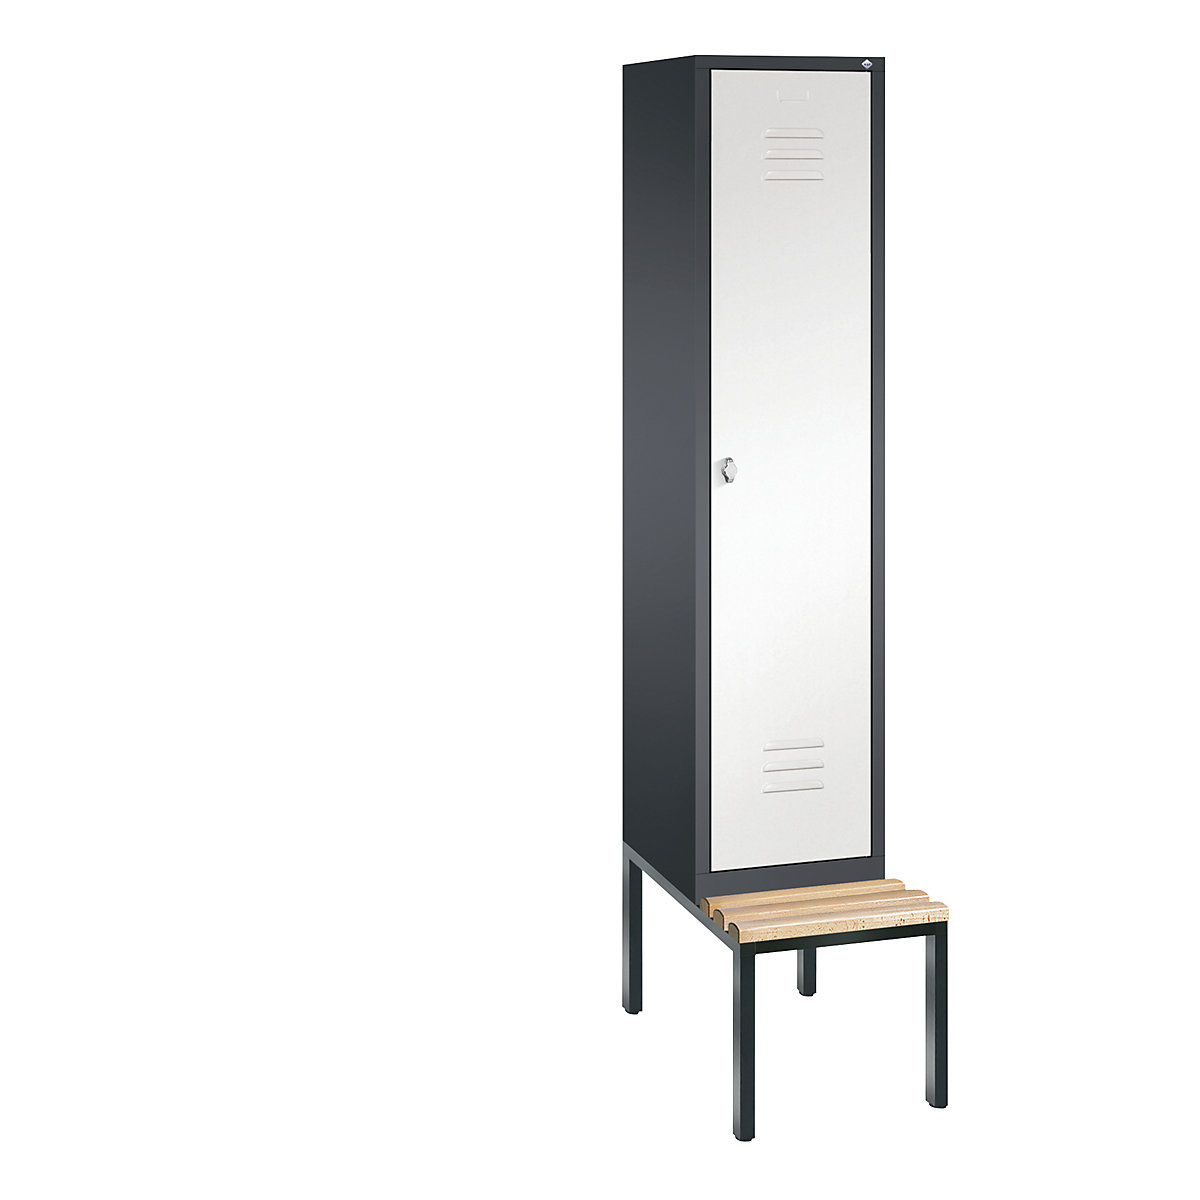 Garderobna omara CLASSIC s klopjo – C+P, 1 predelek, širina 400 mm/predelek, črno sive / prometno bele barve-9